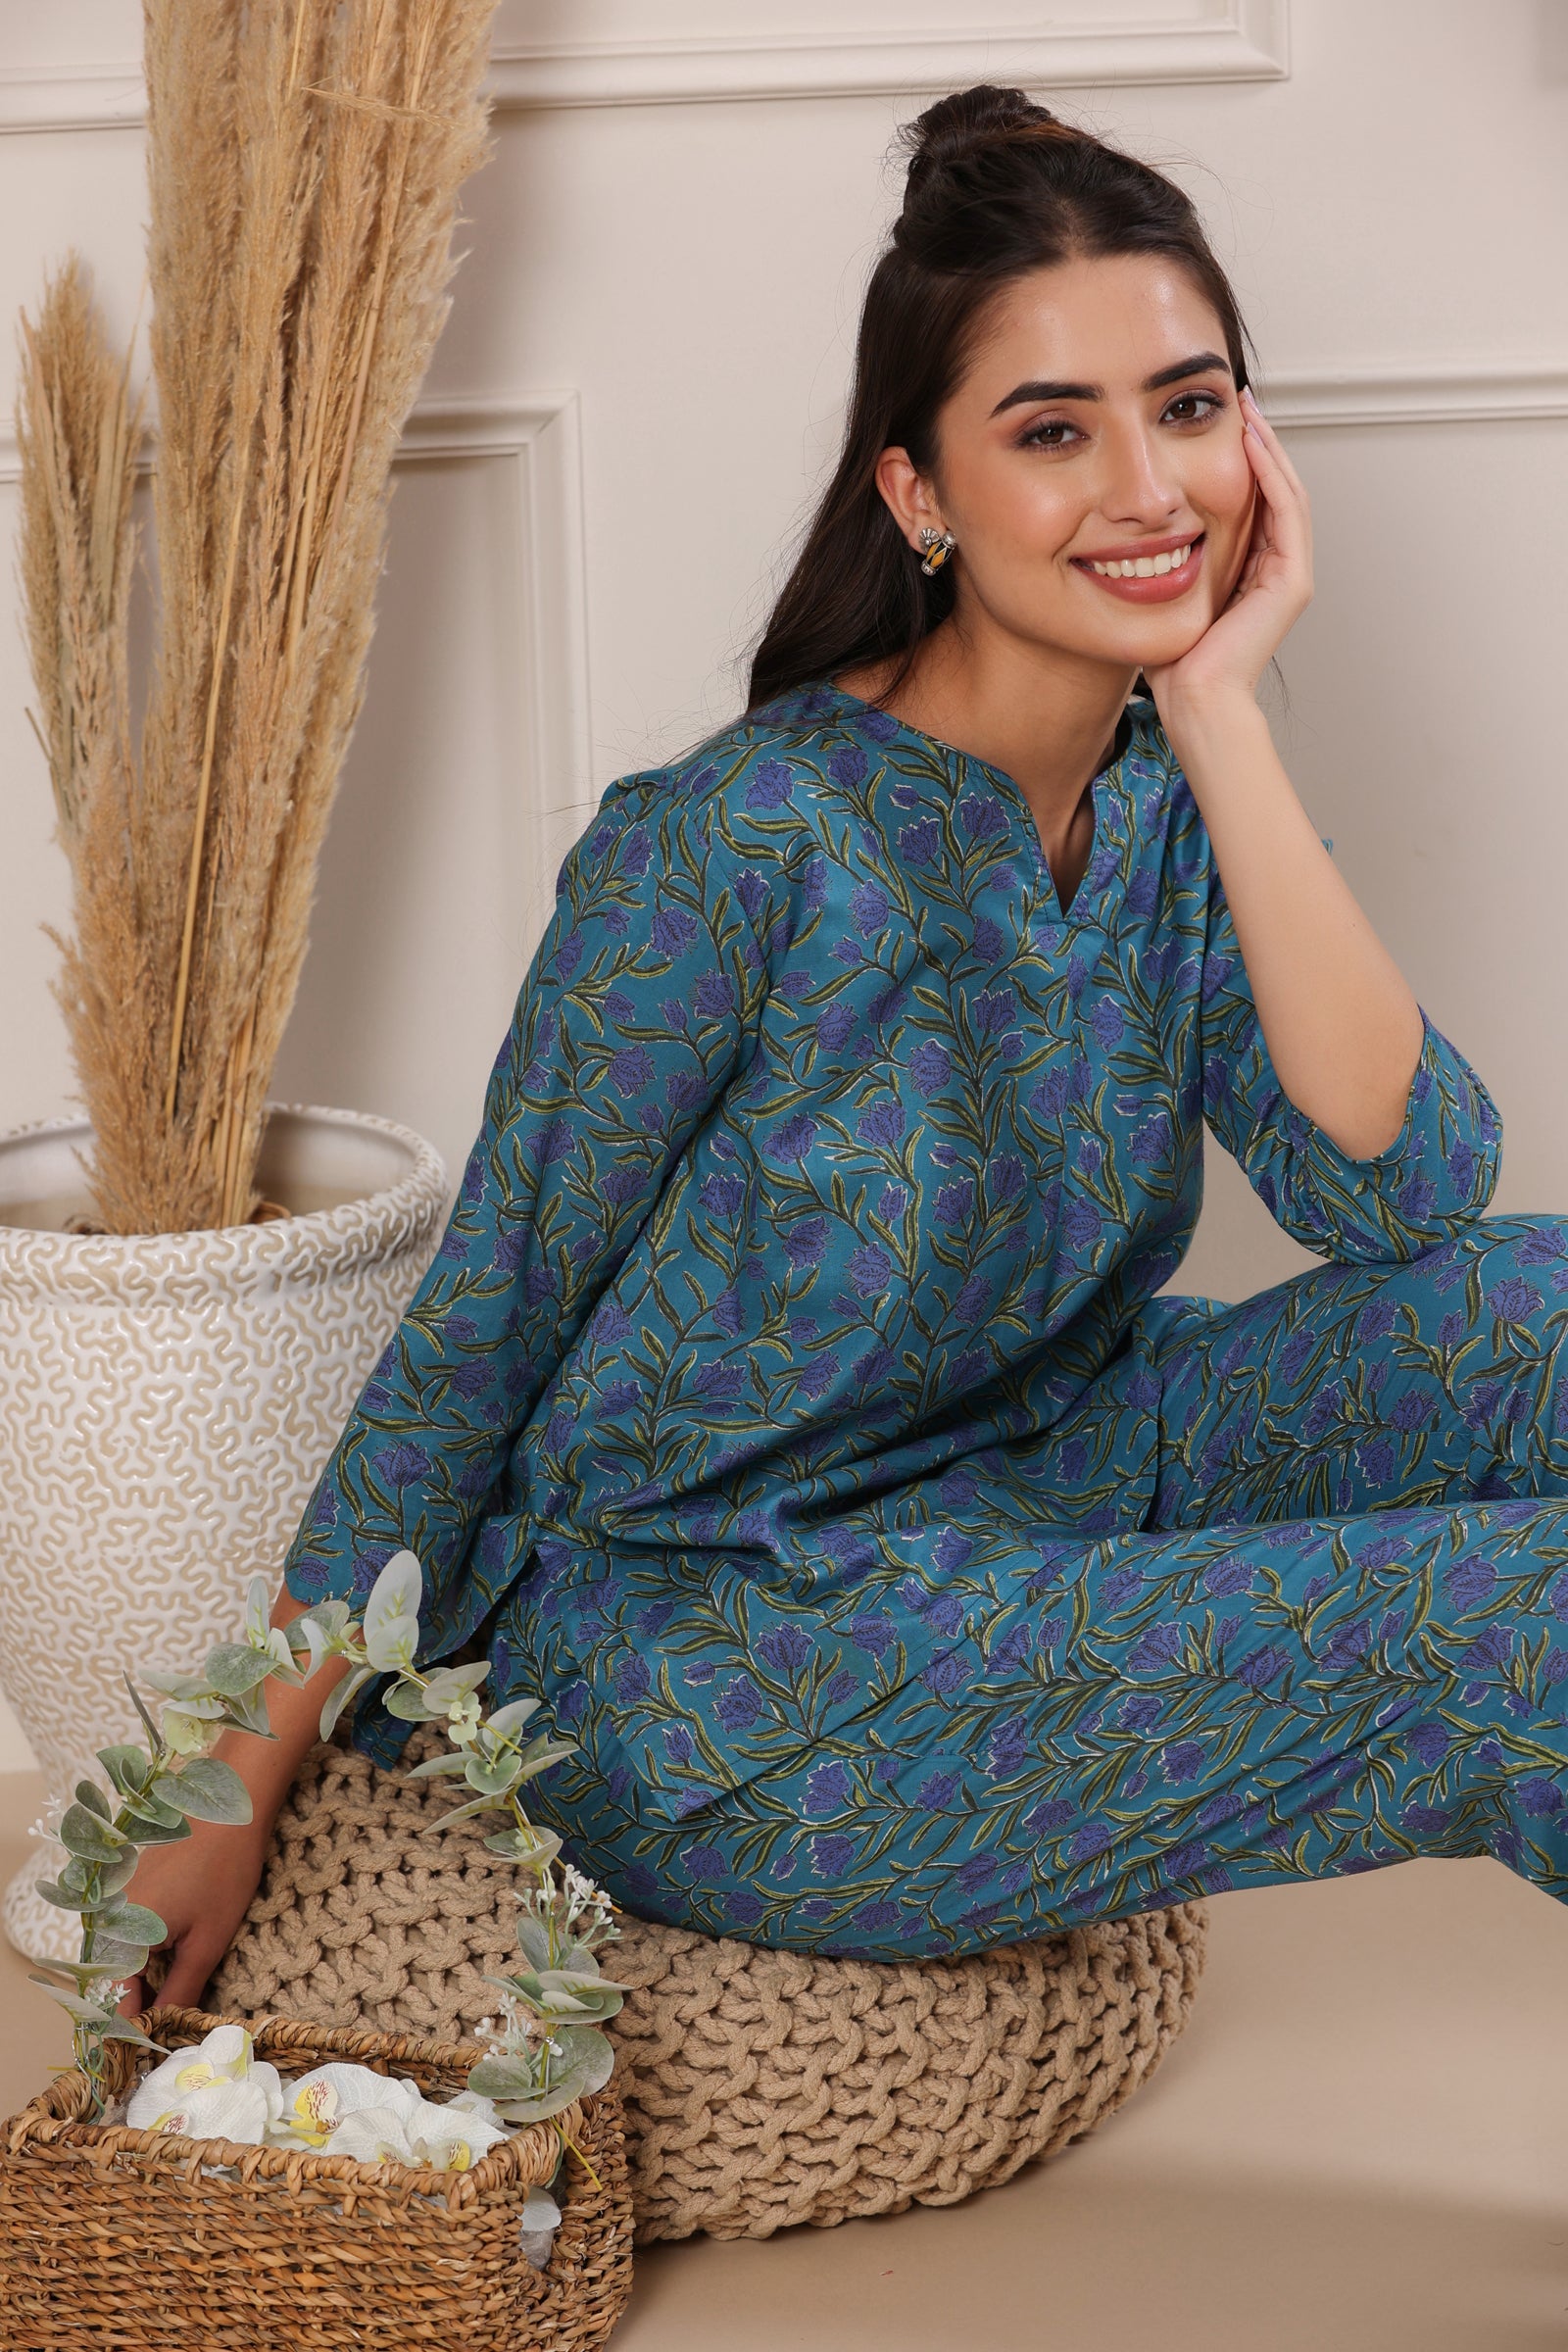 Nidra Lotus Blue Cotton Pyjama Night Suit Set - shahenazindia